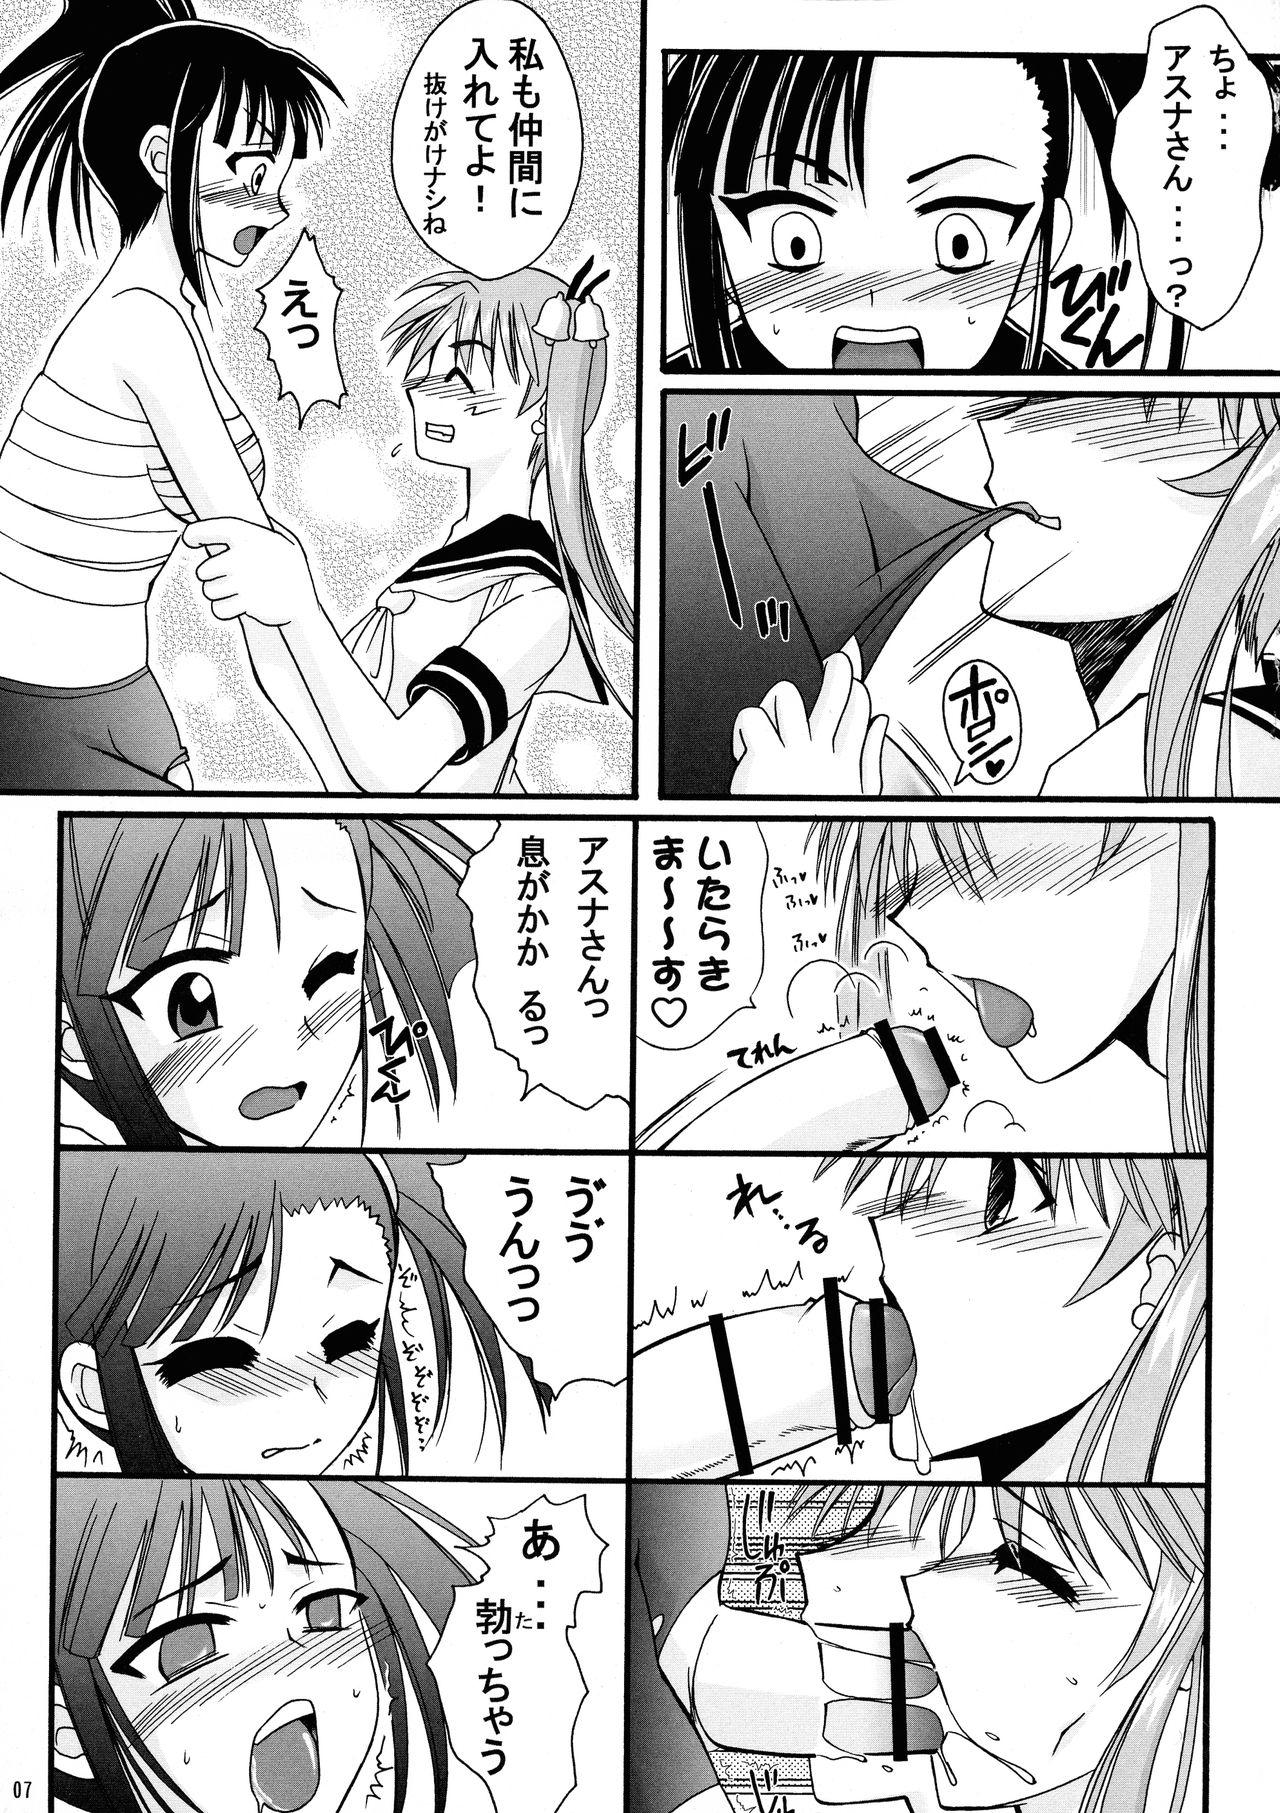 Pegging Mahou Seito Asuna x Setsuna! - Mahou sensei negima Cocksucker - Page 7